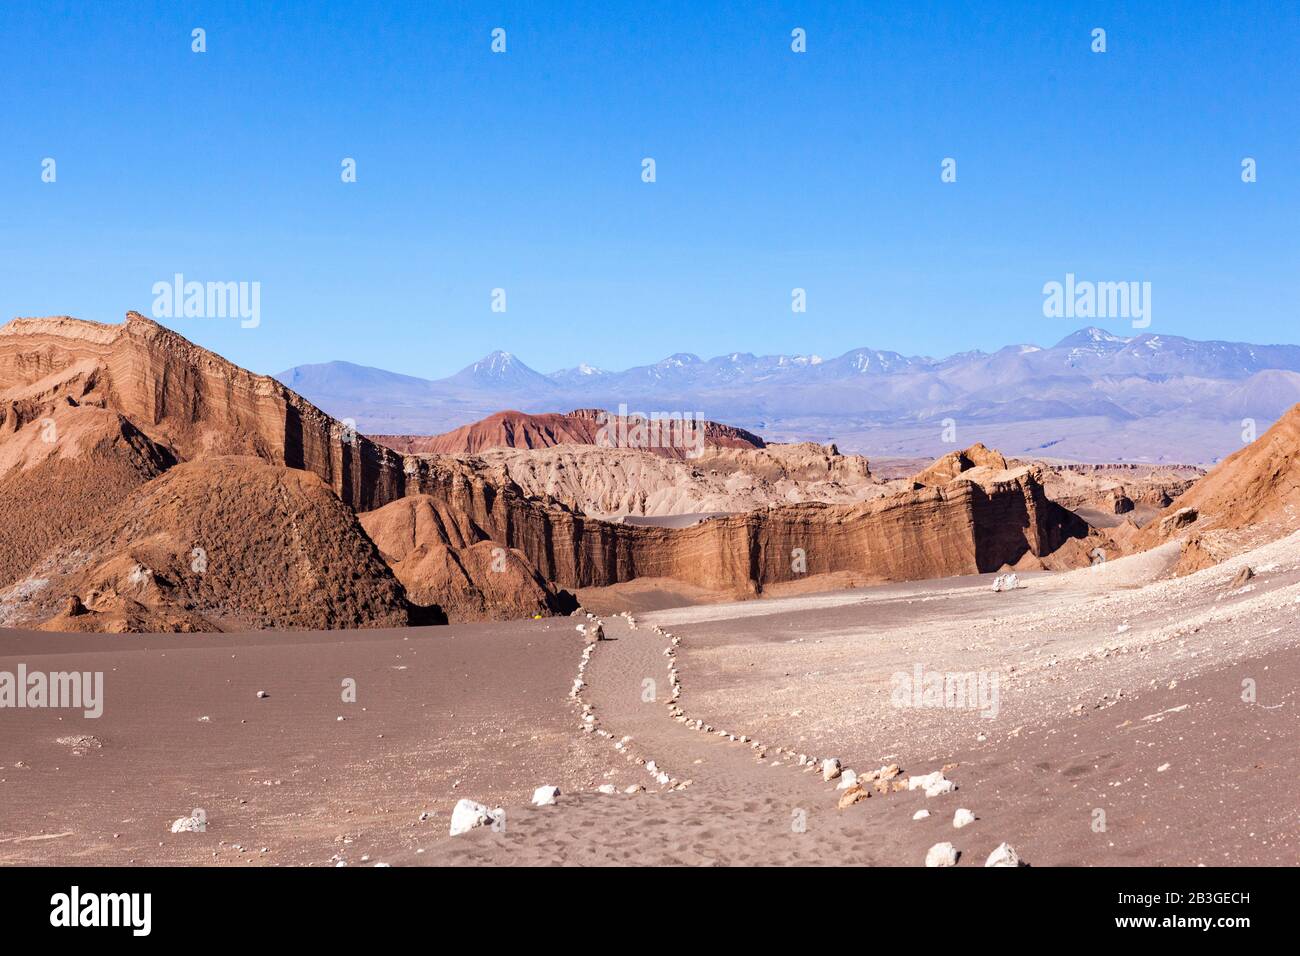 Ein von Steinreihen gekennzeichneter Weg führt Besucher sicher durch die Texturen der Atacama-Wüste, Chile, arid, unbezeihlich und gefährlich. Stockfoto